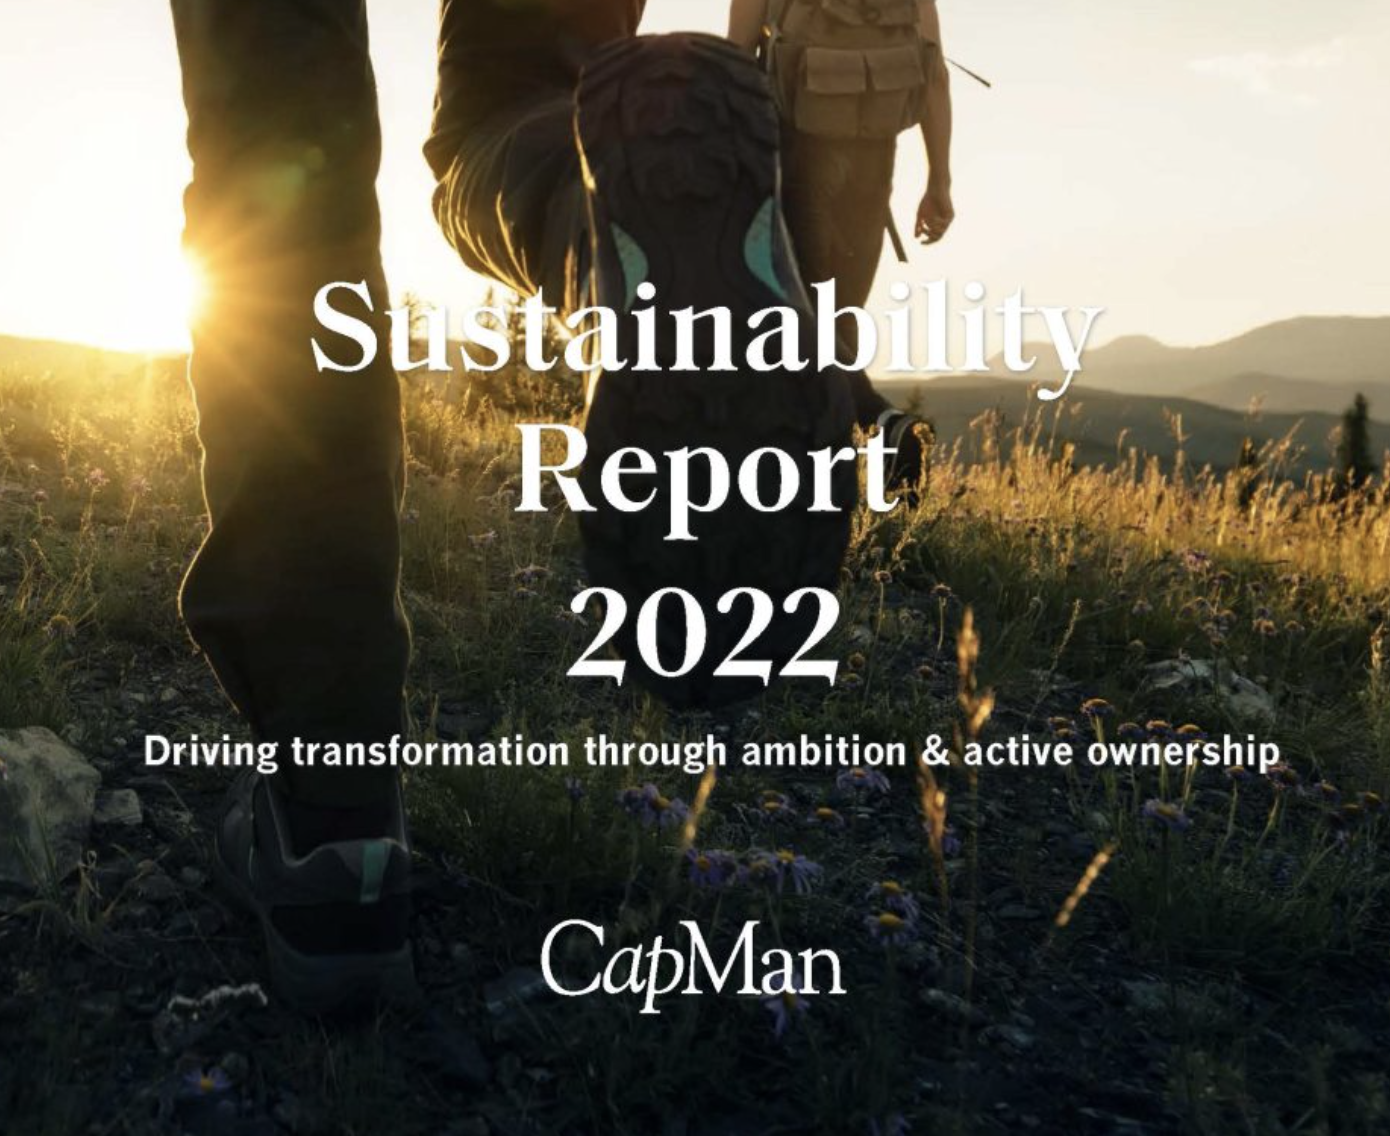 Le fonds d’investissement CapMan publie son rapport pour l’année 2022 : focus sur la transition vers une société durable